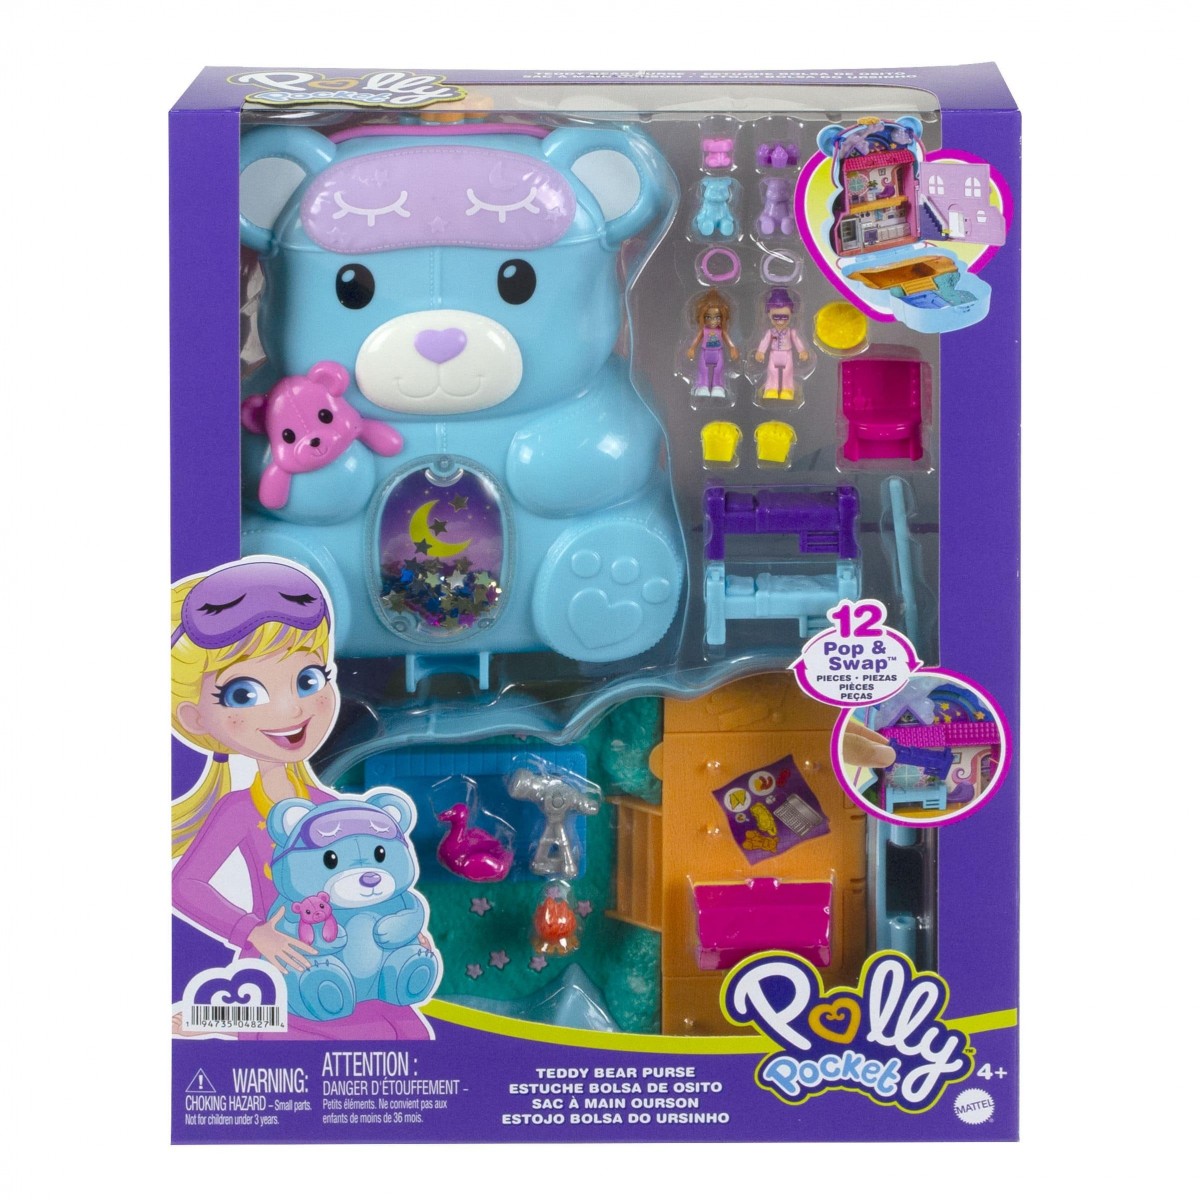 HGC39 jouet pour enfant thème soirée pyjama avec 2 mini-figurines et 16 accessoires Polly Pocket Coffret Sac à Main Ourson Surprises 